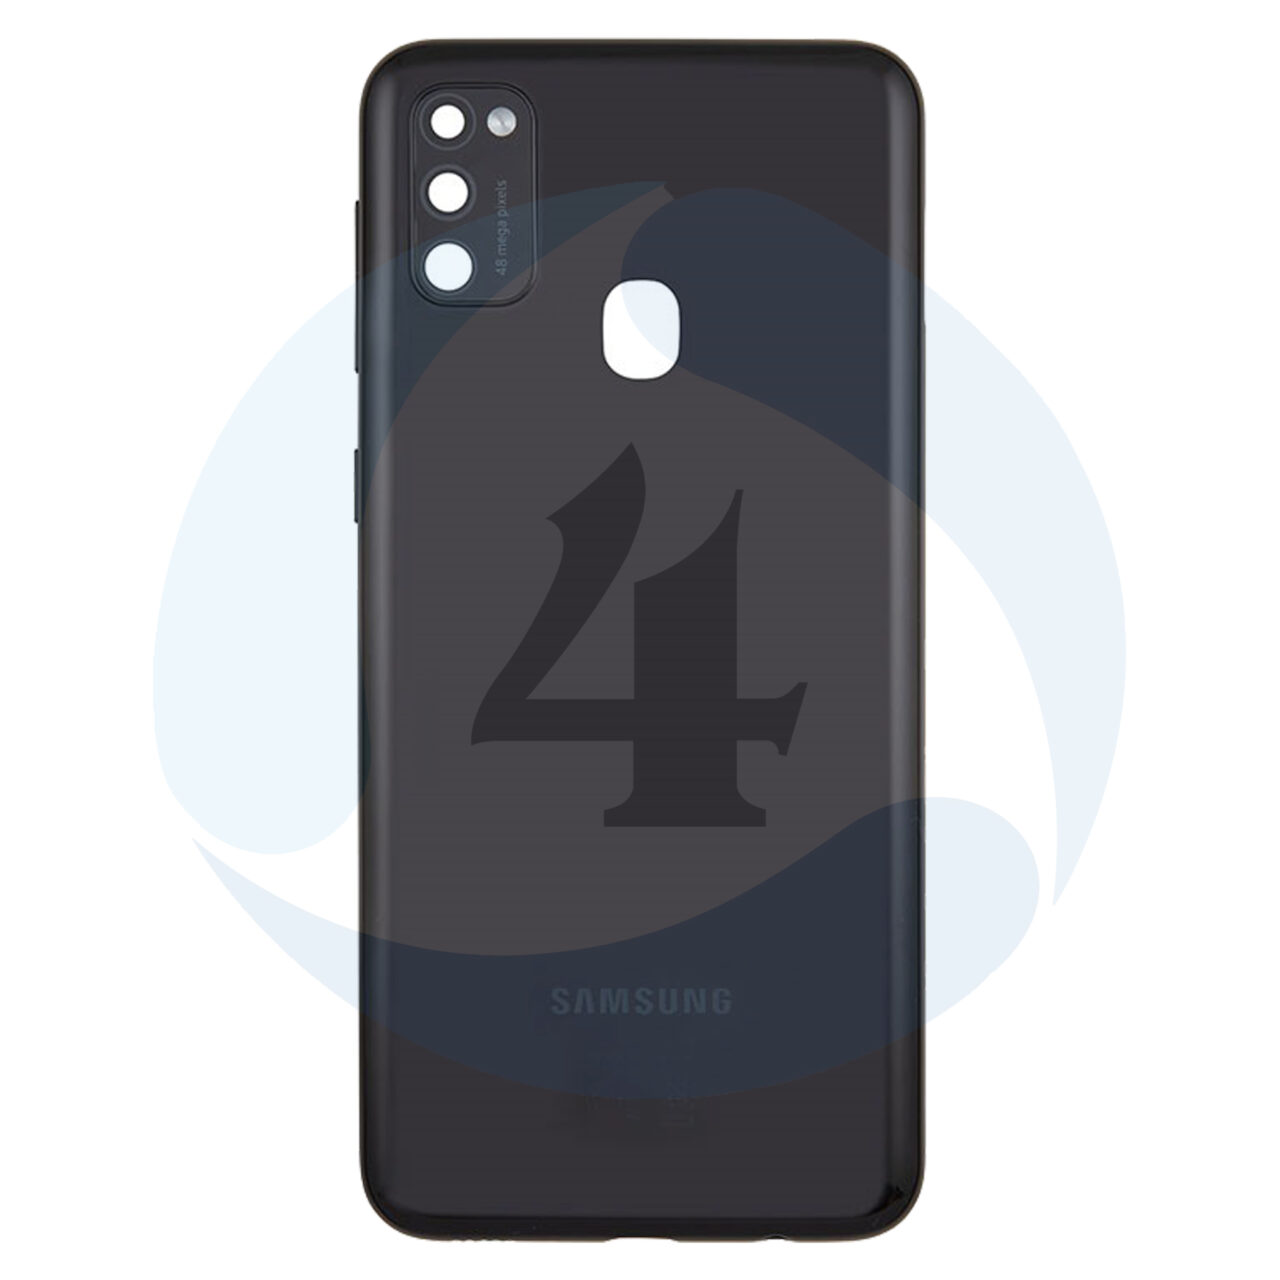 Samsung Galaxy M21 M215f M307f M30s Back Cover GH82 22609 A Black